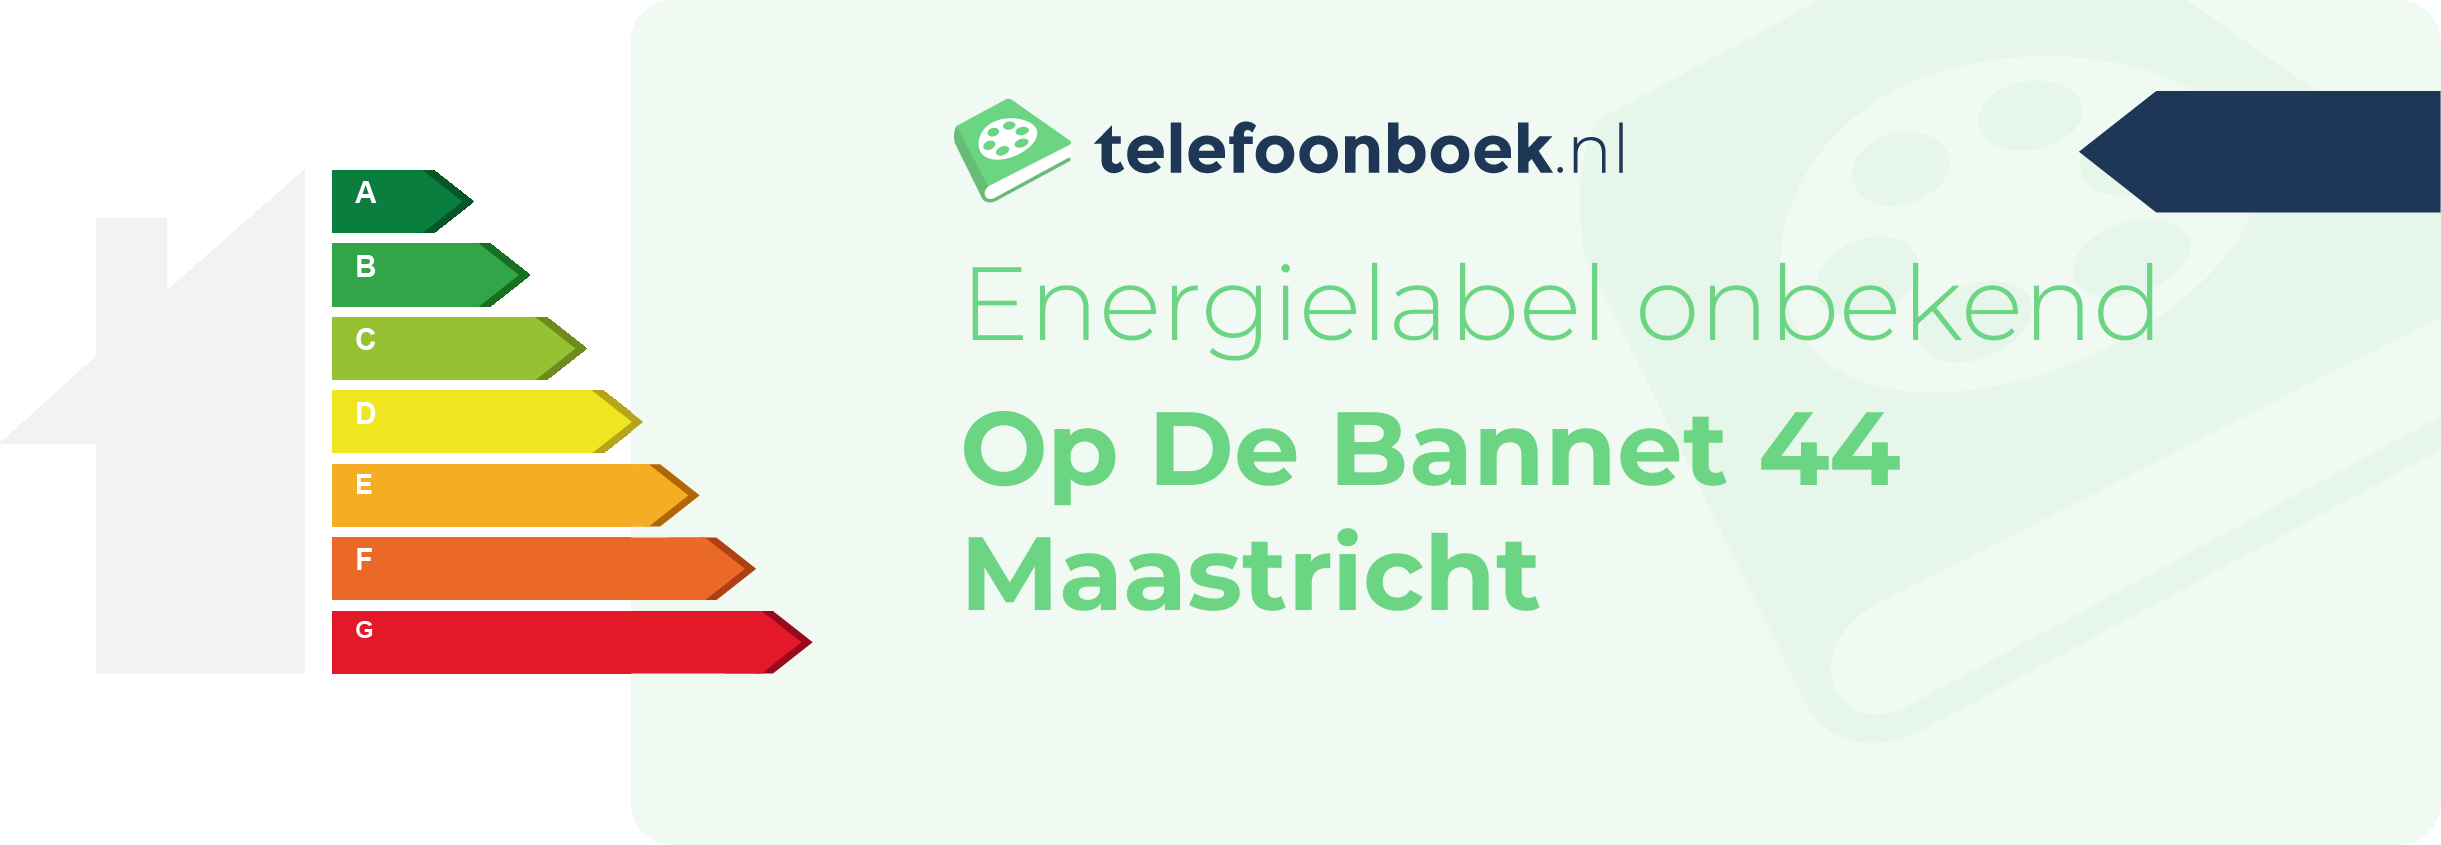 Energielabel Op De Bannet 44 Maastricht